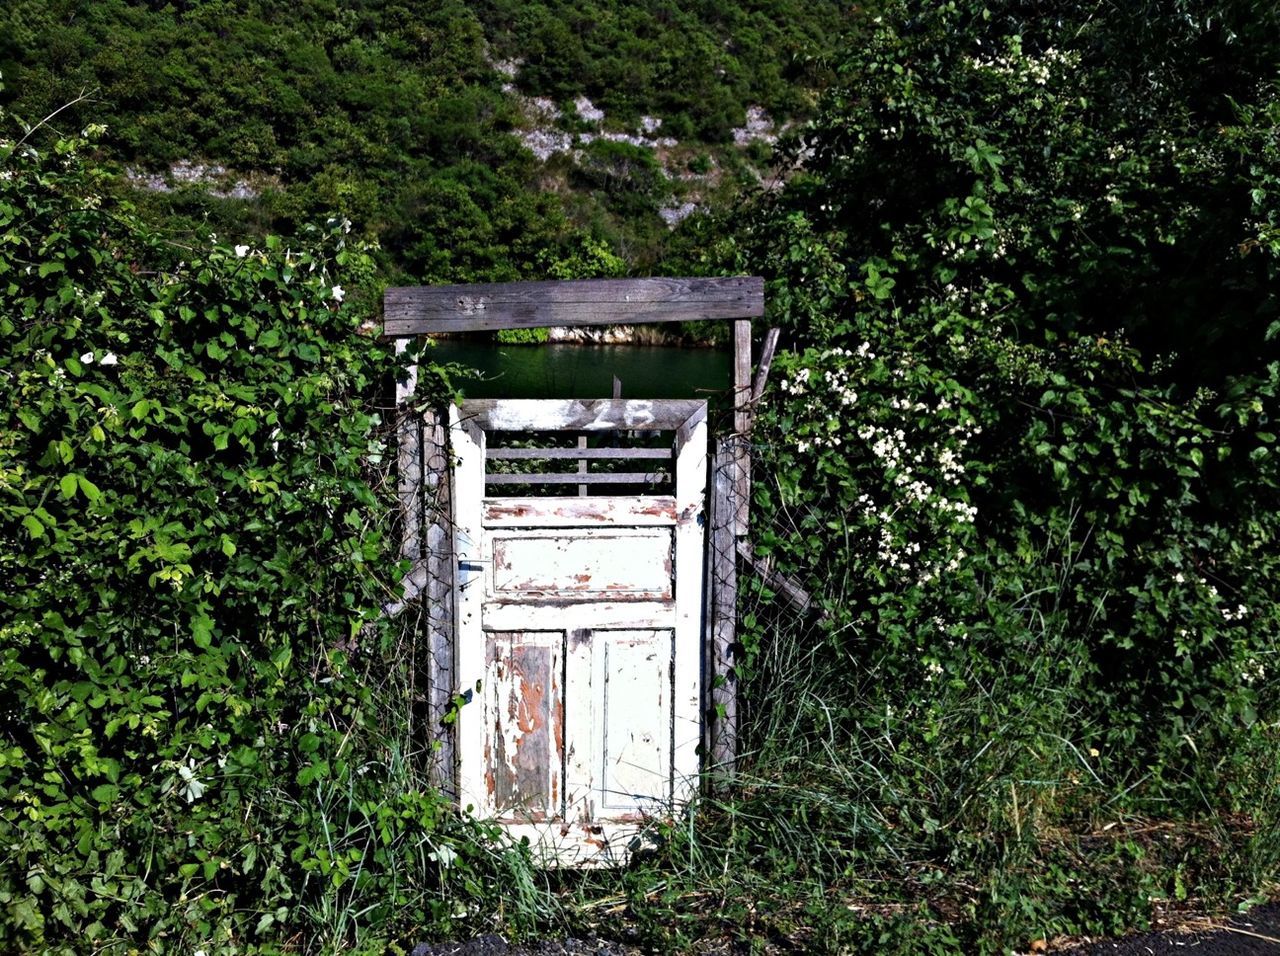 Old gate among bushes